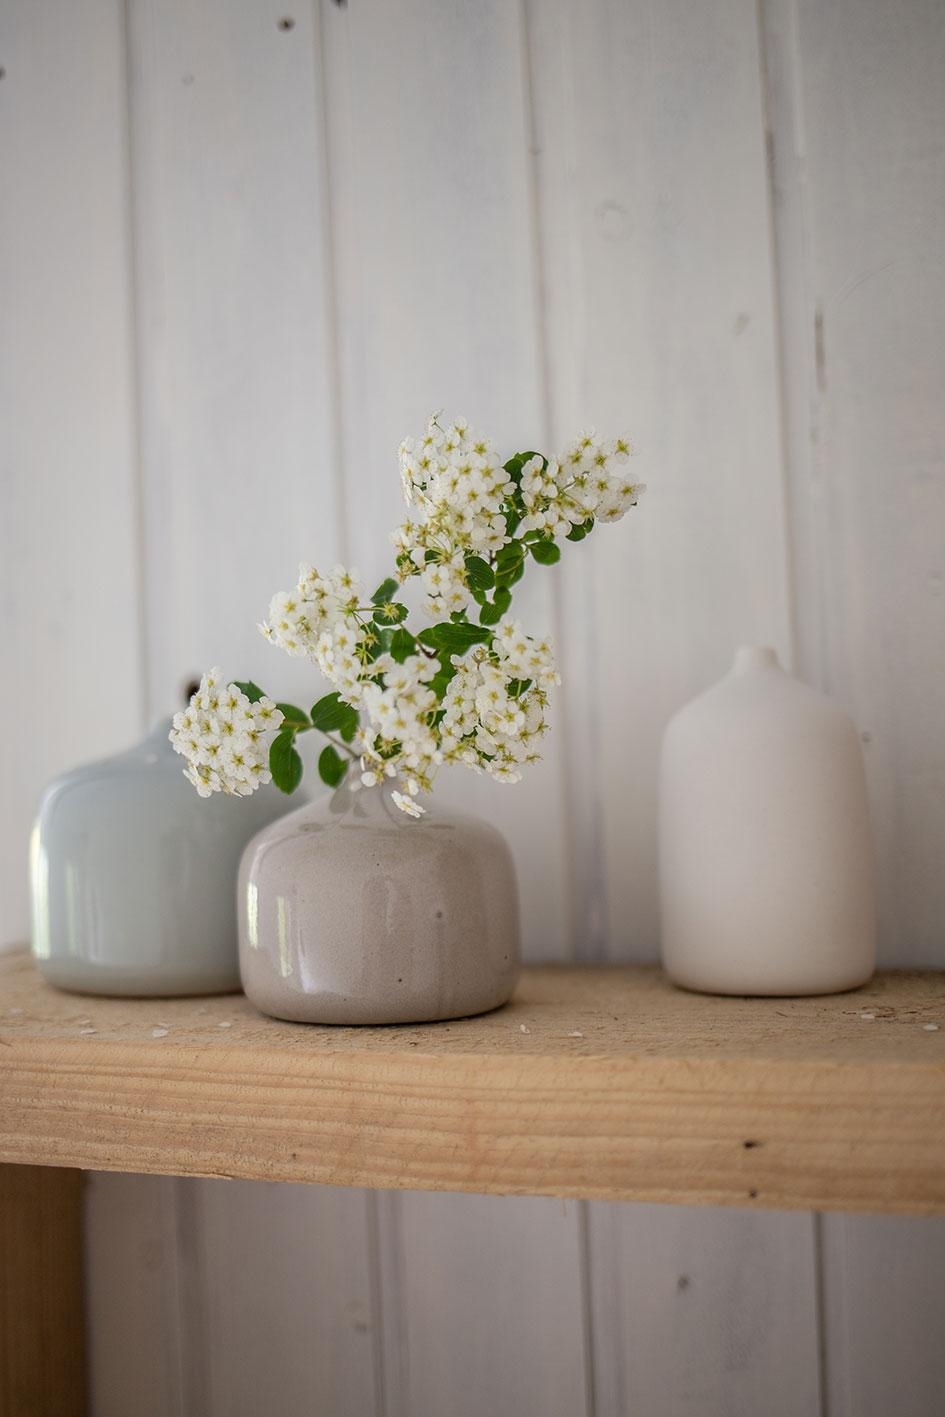 Handgemachte kleine Vasen 😊
#handmade #finnisch #slowminimalstyle #kleinevase #kaisumari